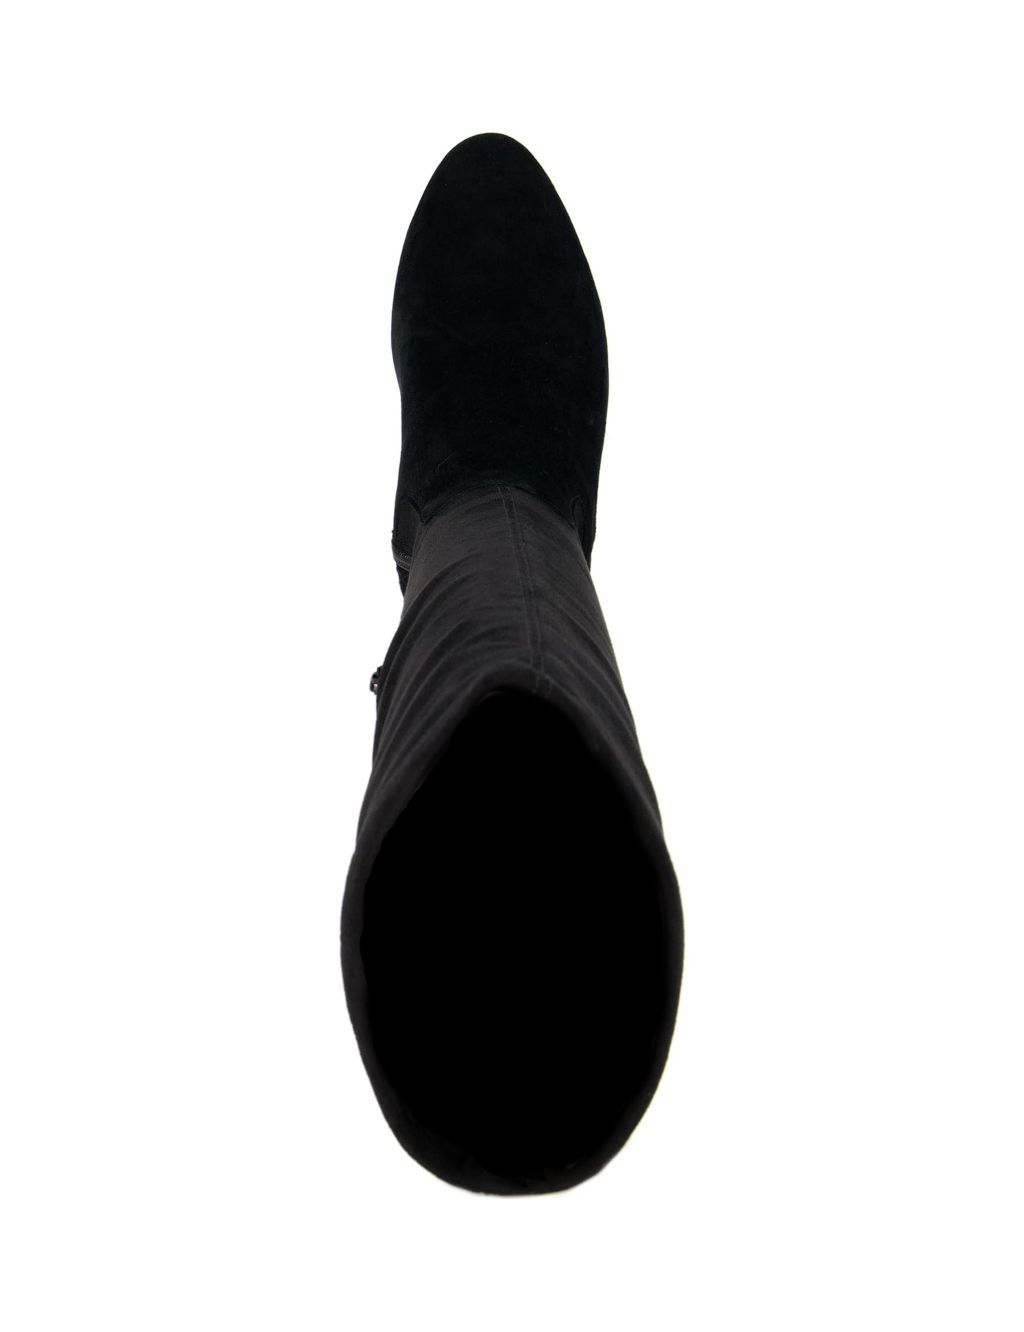 Wide Fit Suede Block Heel Knee High Boots | Dune London | M&S